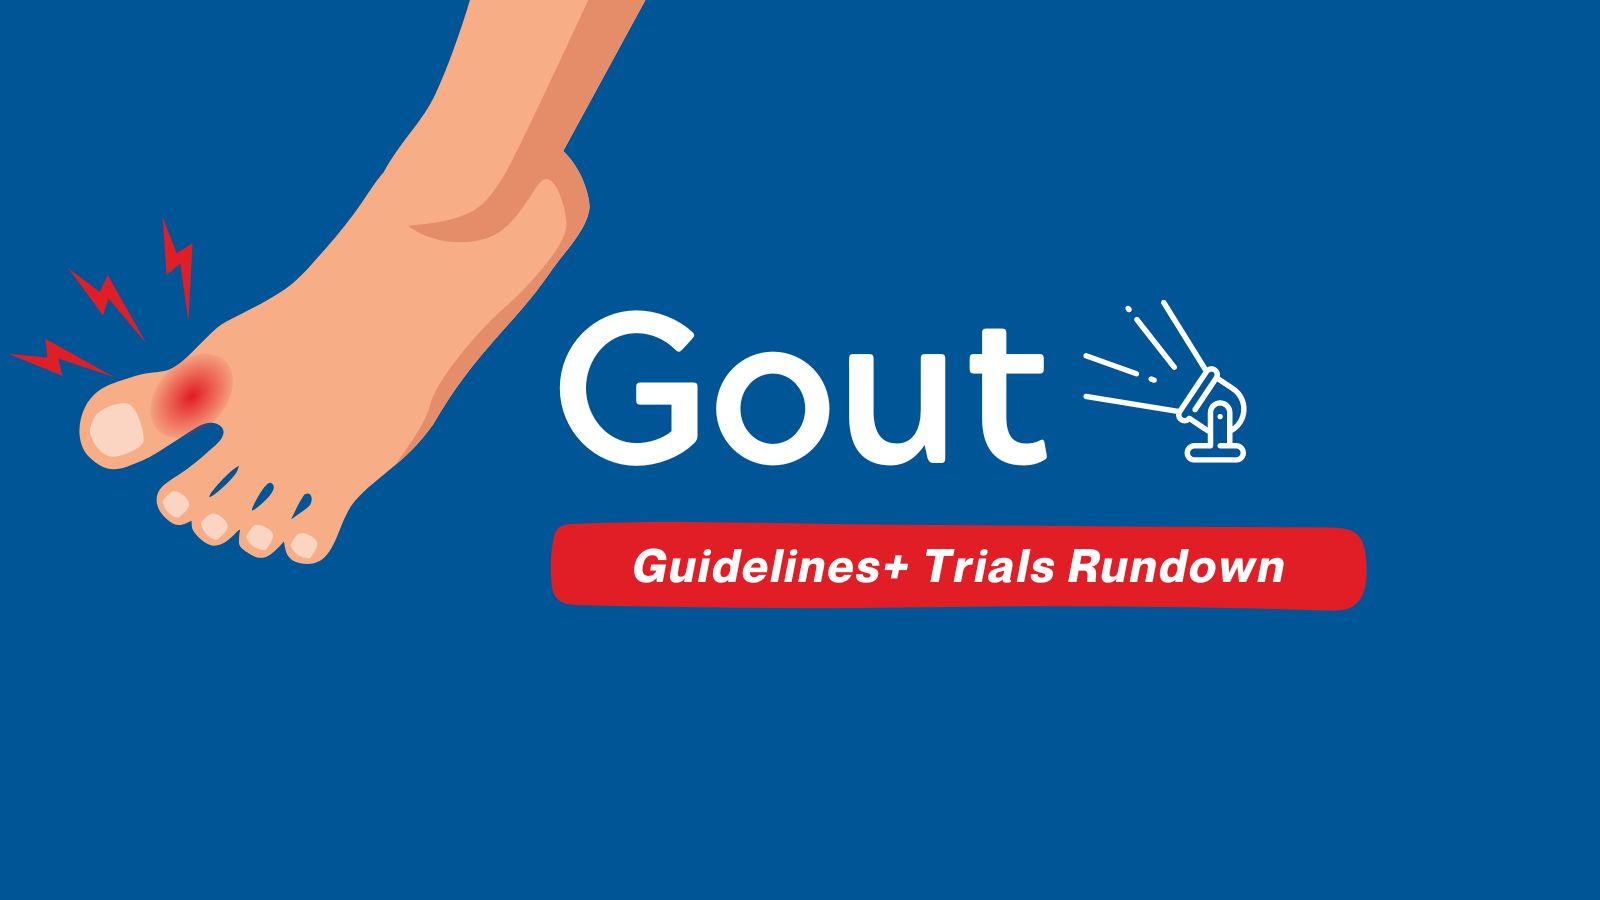 Guidelines+ Trials Rundown - Gout